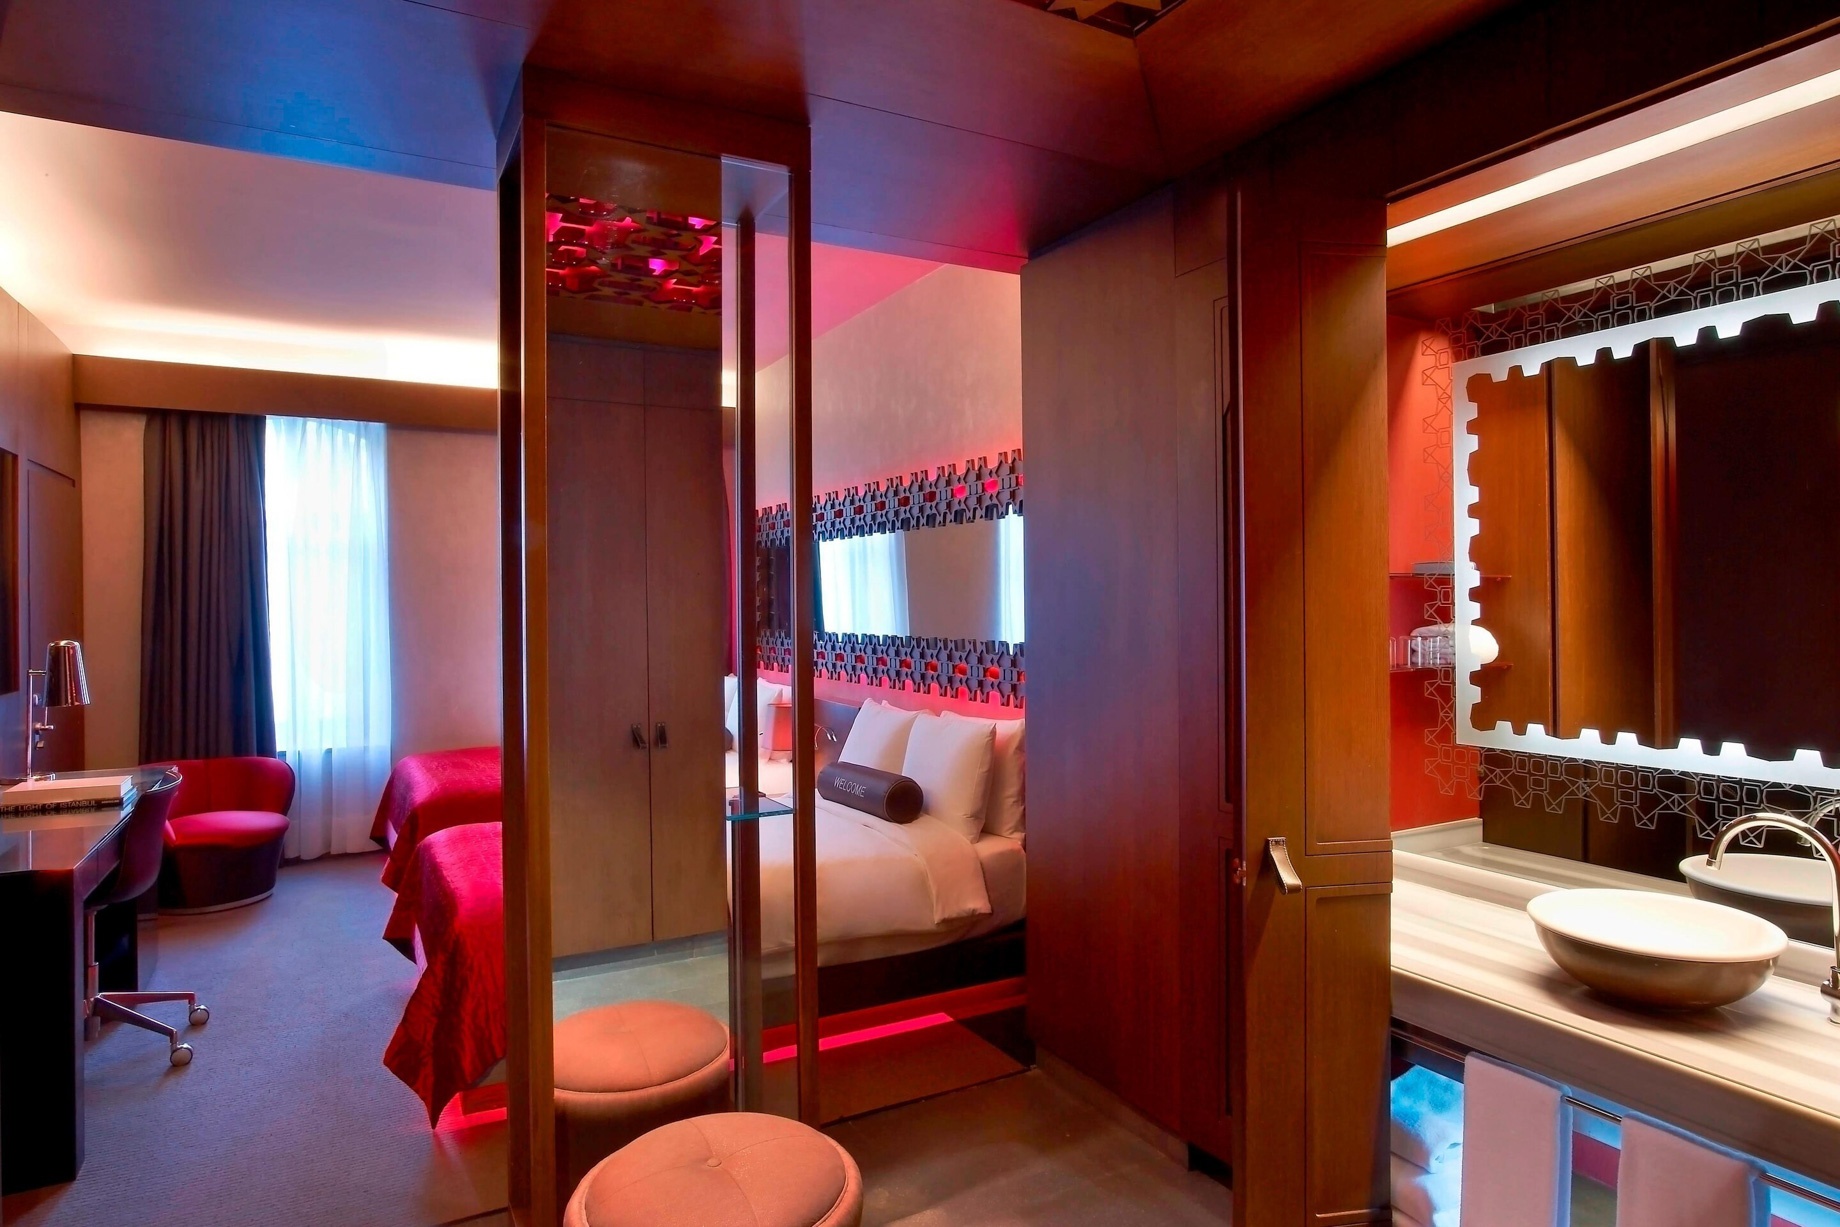 W Istanbul Hotel – Istanbul, Turkey – Wonderful Room